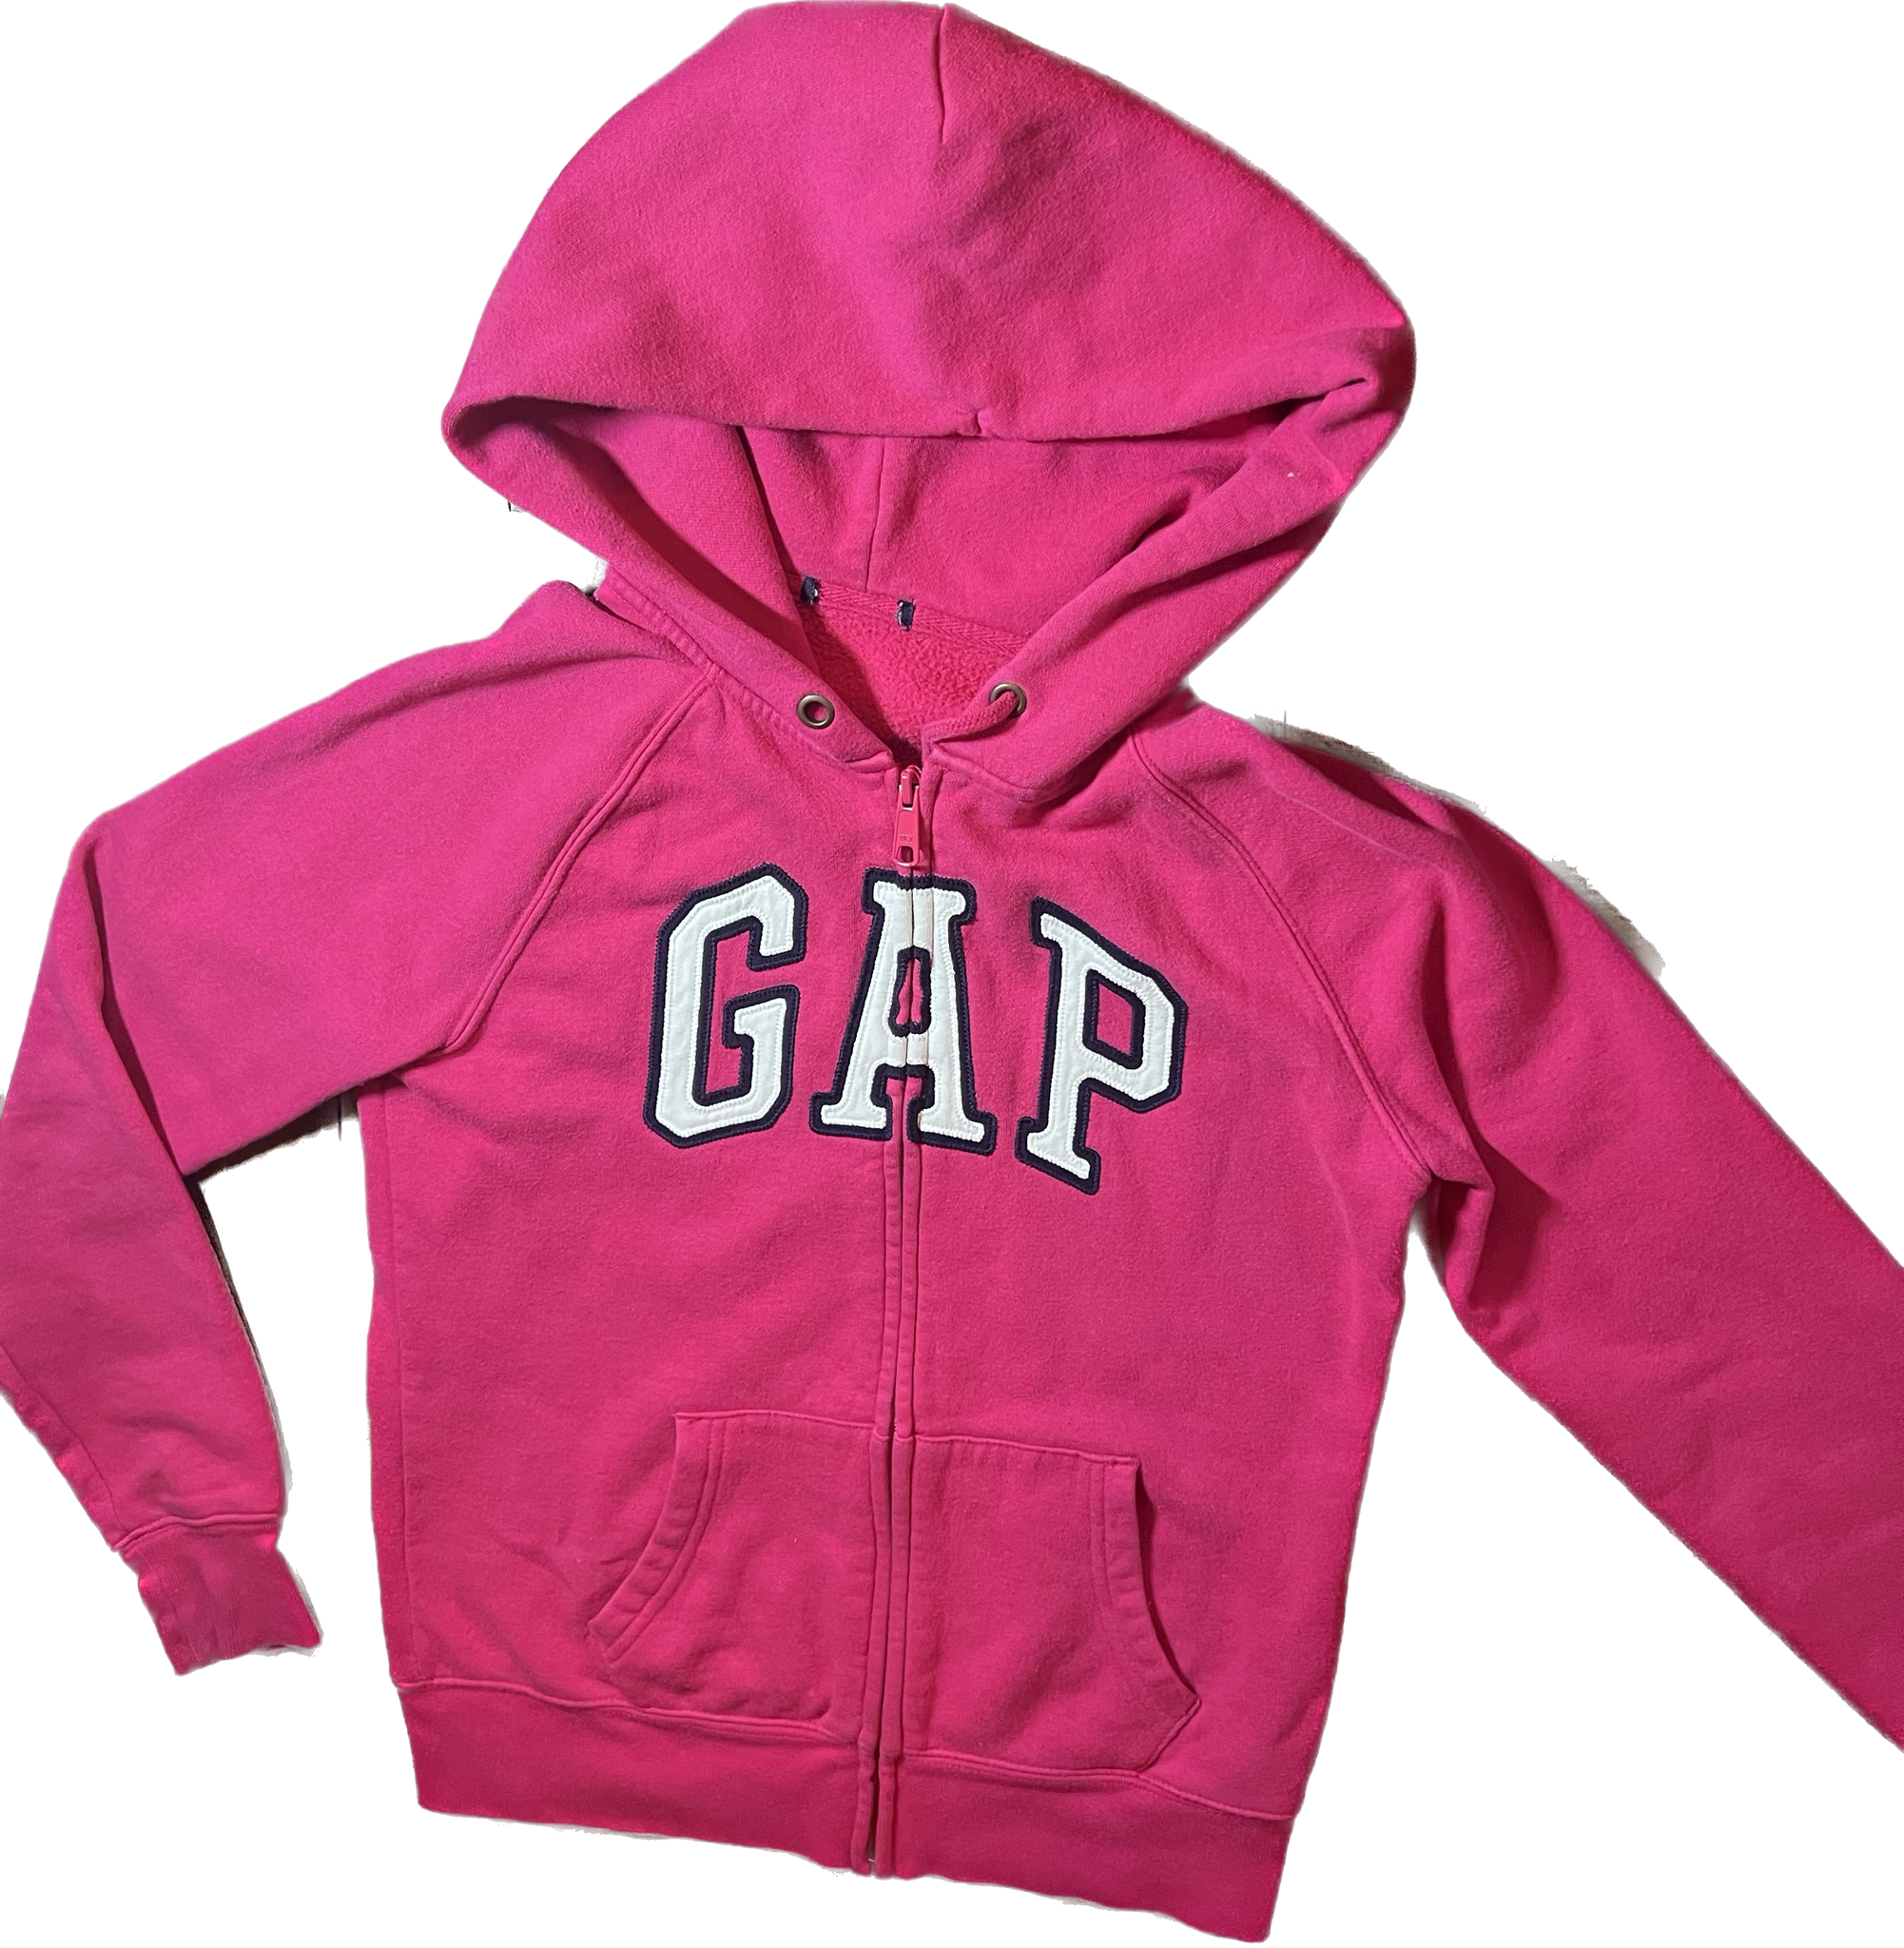 Youth Girls Gap Pink Sweatshirt Tween Large